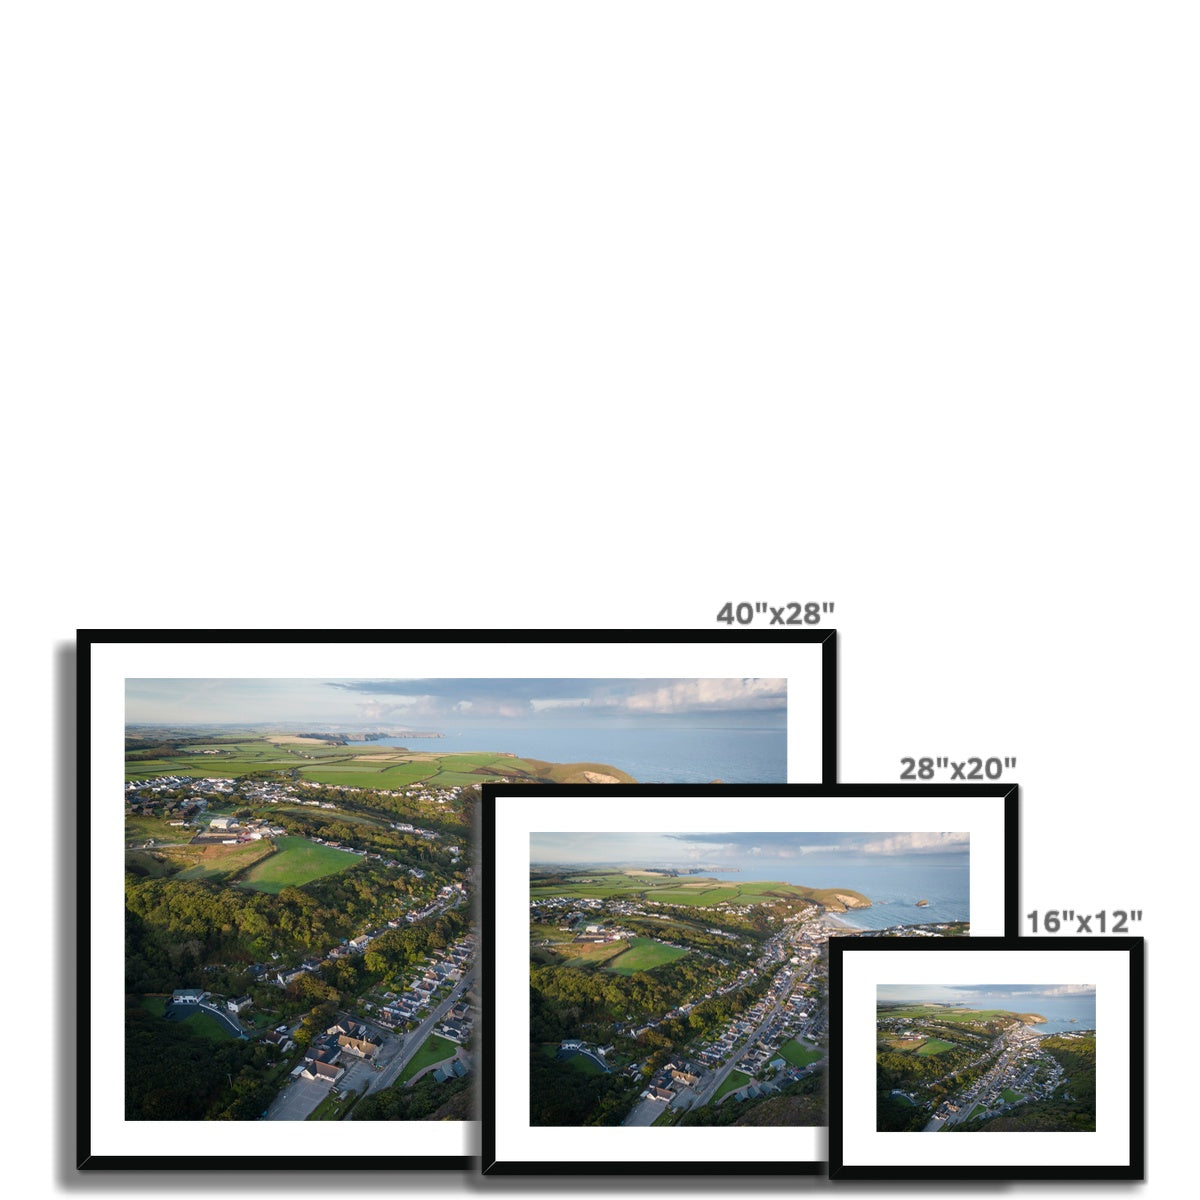 Portreath Village Landscape ~ Framed & Mounted Print